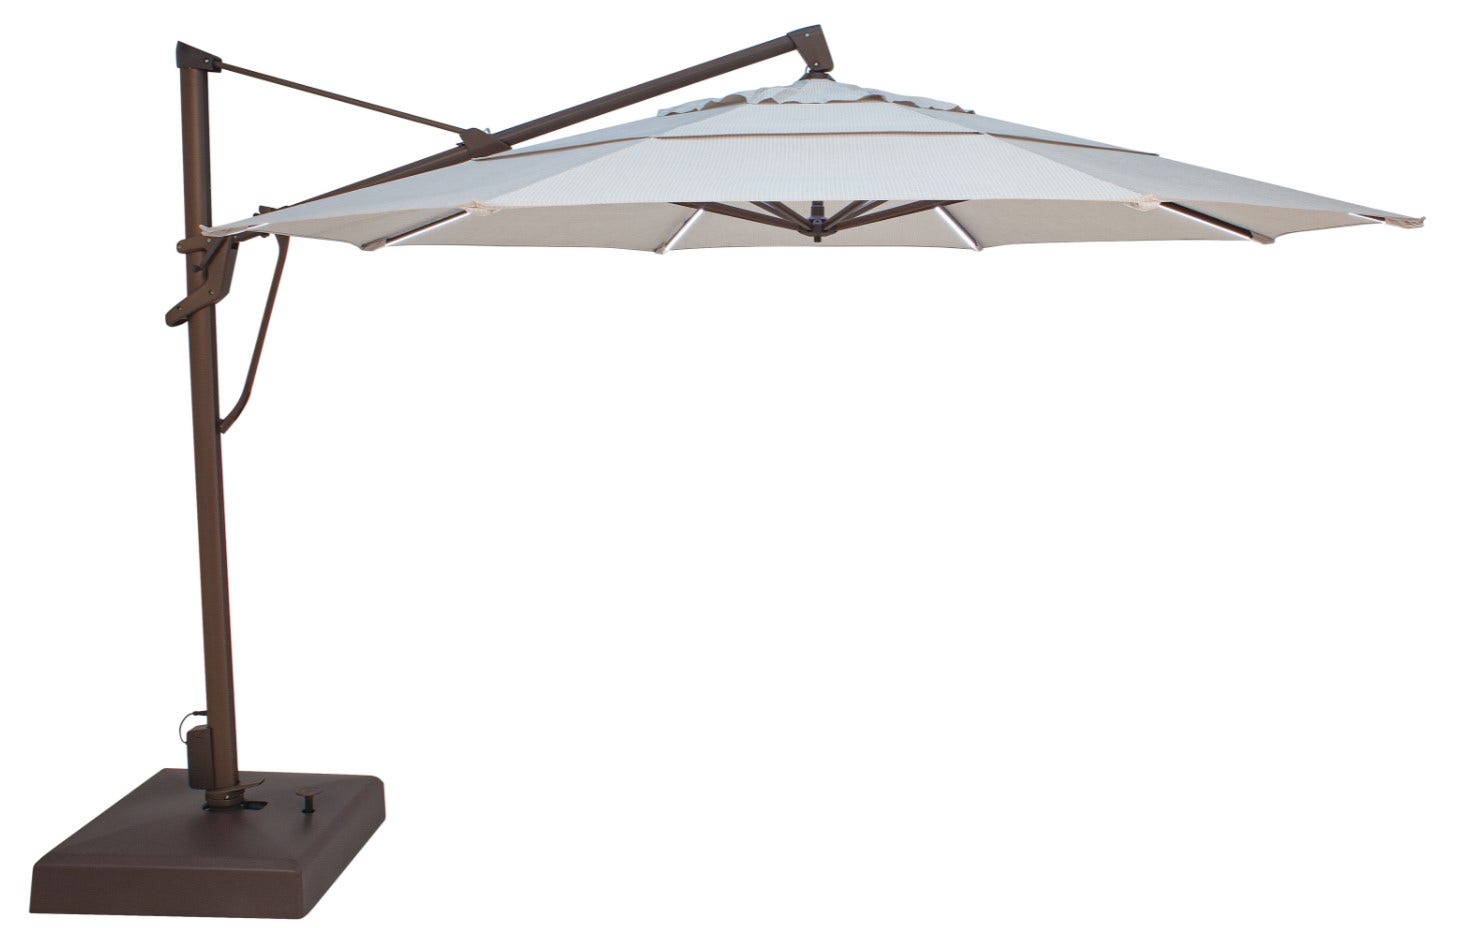 Treasure Garden 13' Octagon Starlux AKZP Cantilever Umbrella with Bronze Frame Outdoor Umbrellas & Sunshades